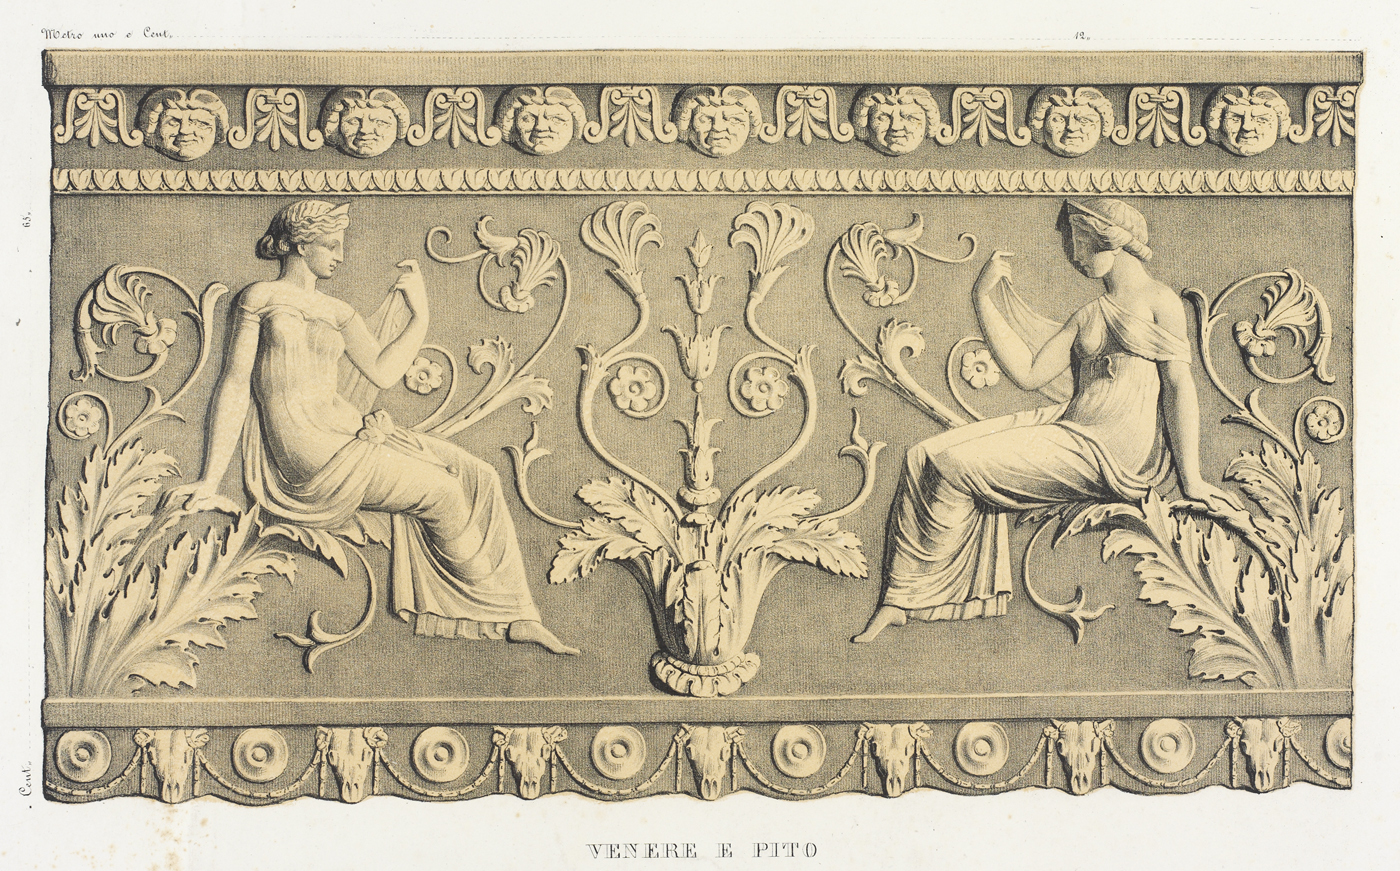 Venere e pito, efter Giovanni Pietro Campana: Antiche opere in plastica, Rom, 1842, planche XIII